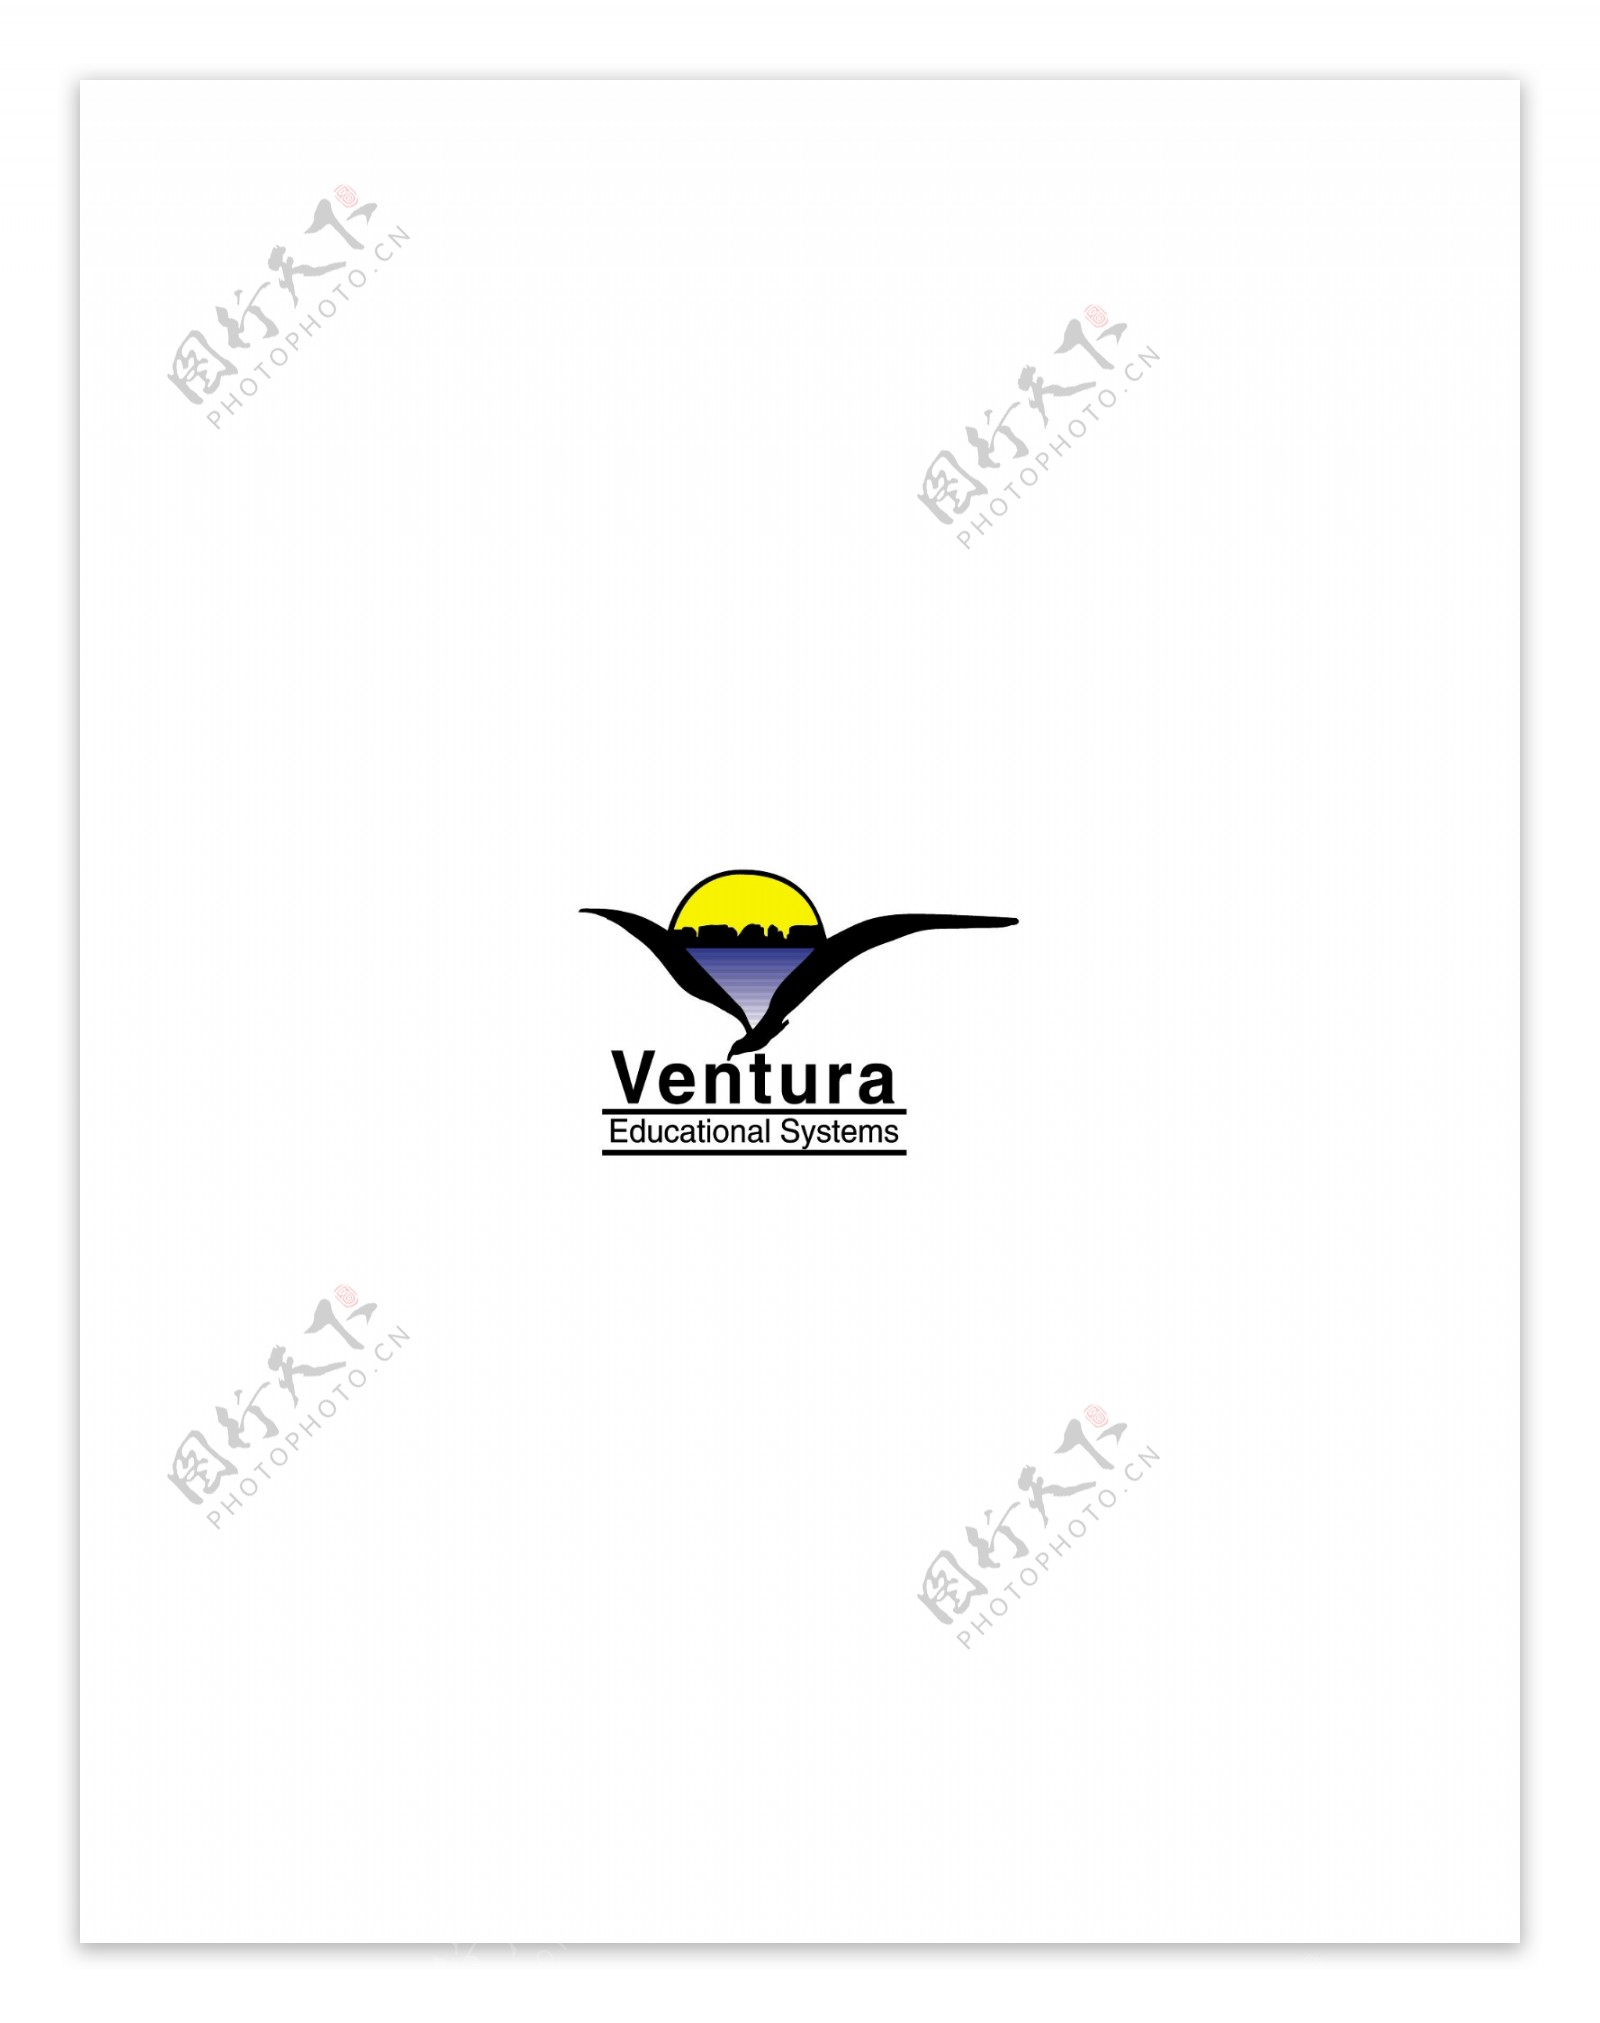 Venturalogo设计欣赏足球和娱乐相关标志Ventura下载标志设计欣赏